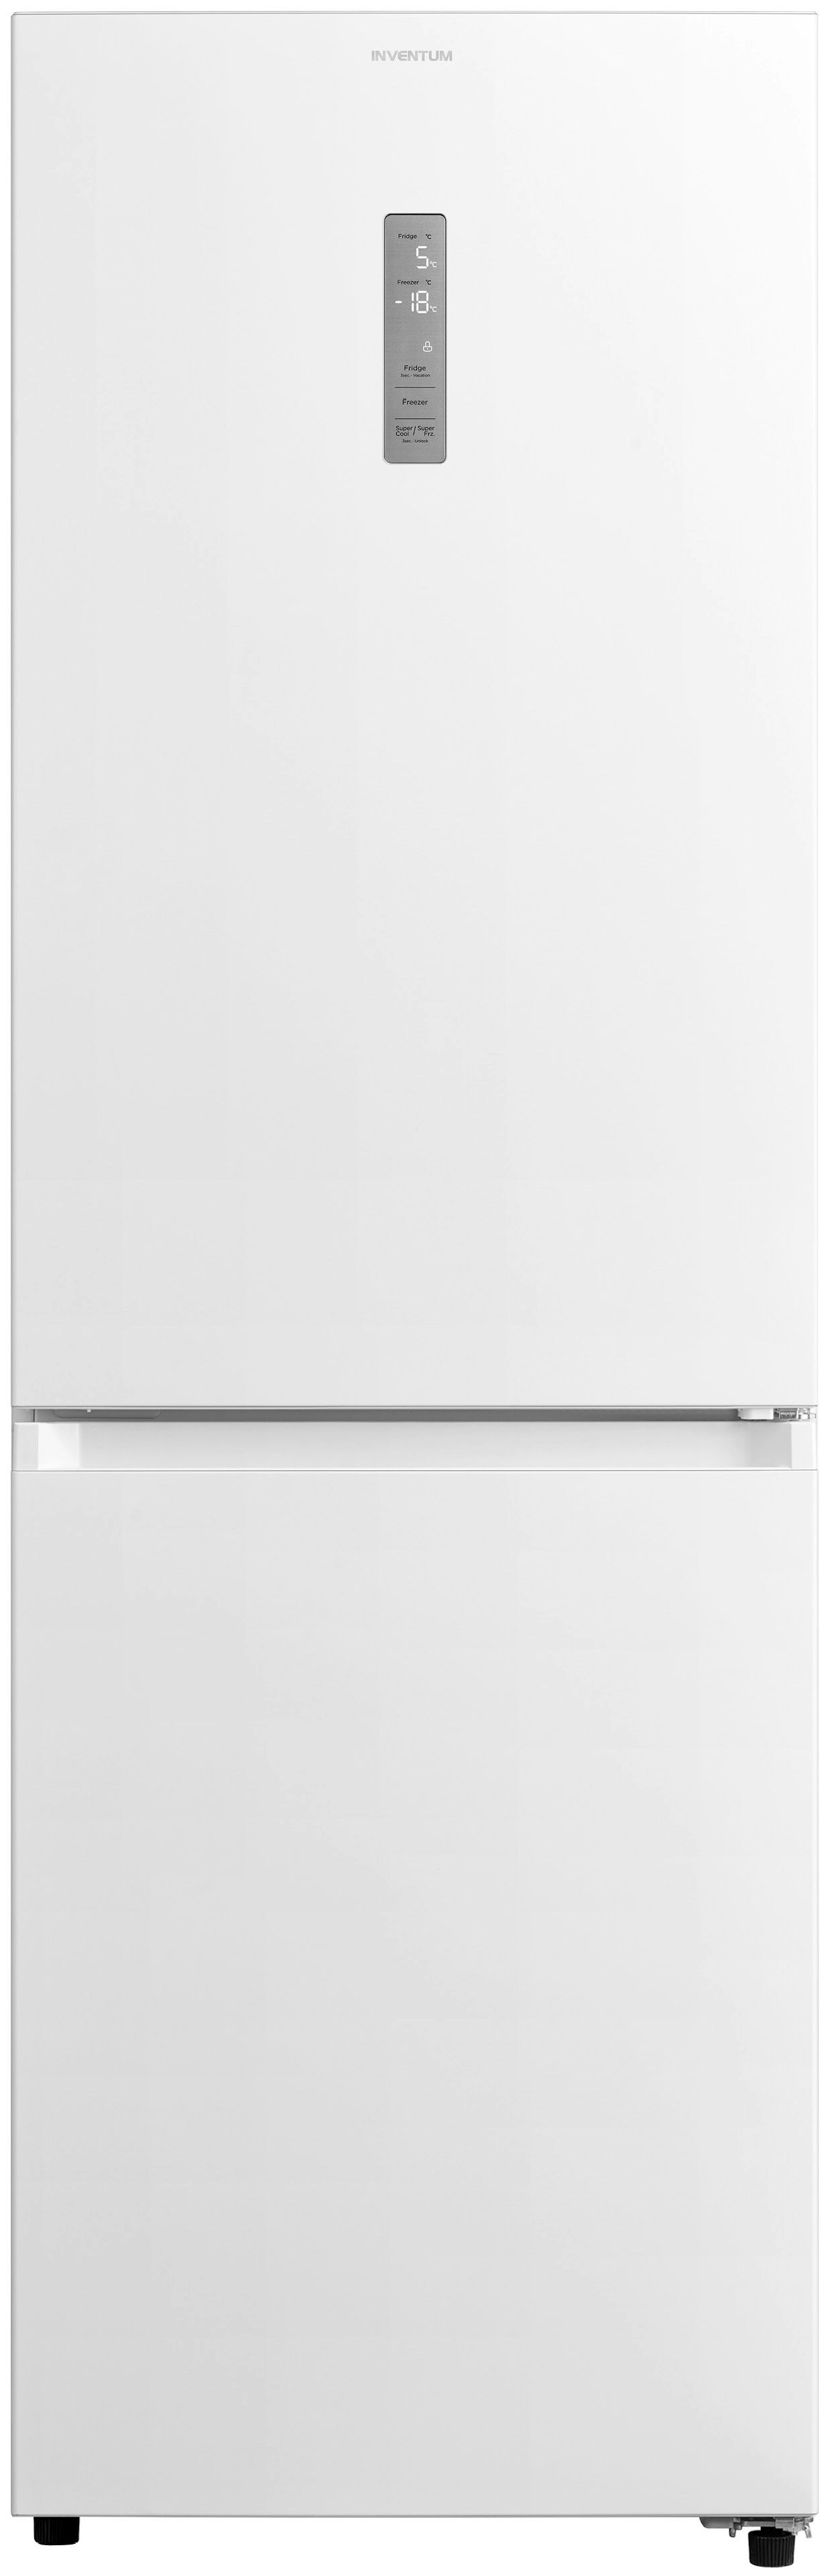 Inventum koelkast KV1850W afbeelding 3